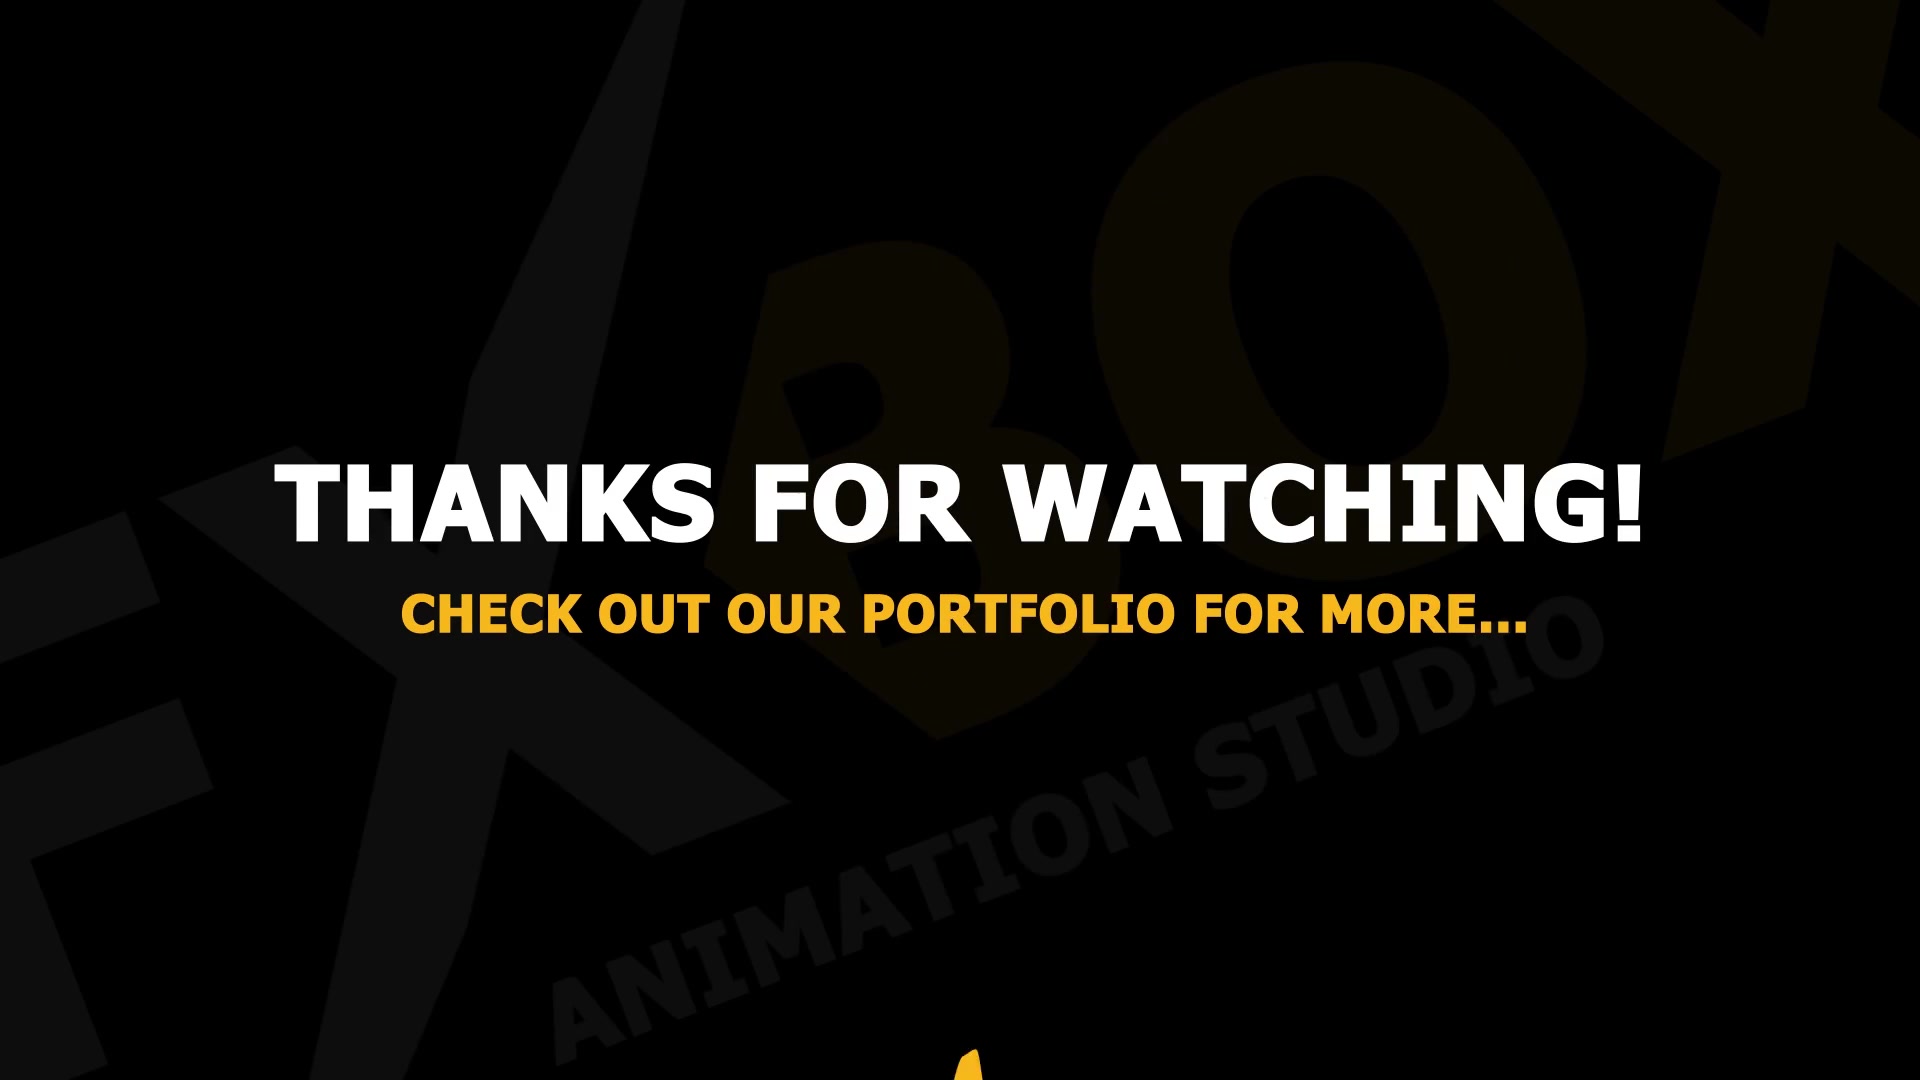 2D Cartoon Snow | Premiere Pro MOGRT Videohive 25347015 Premiere Pro Image 10